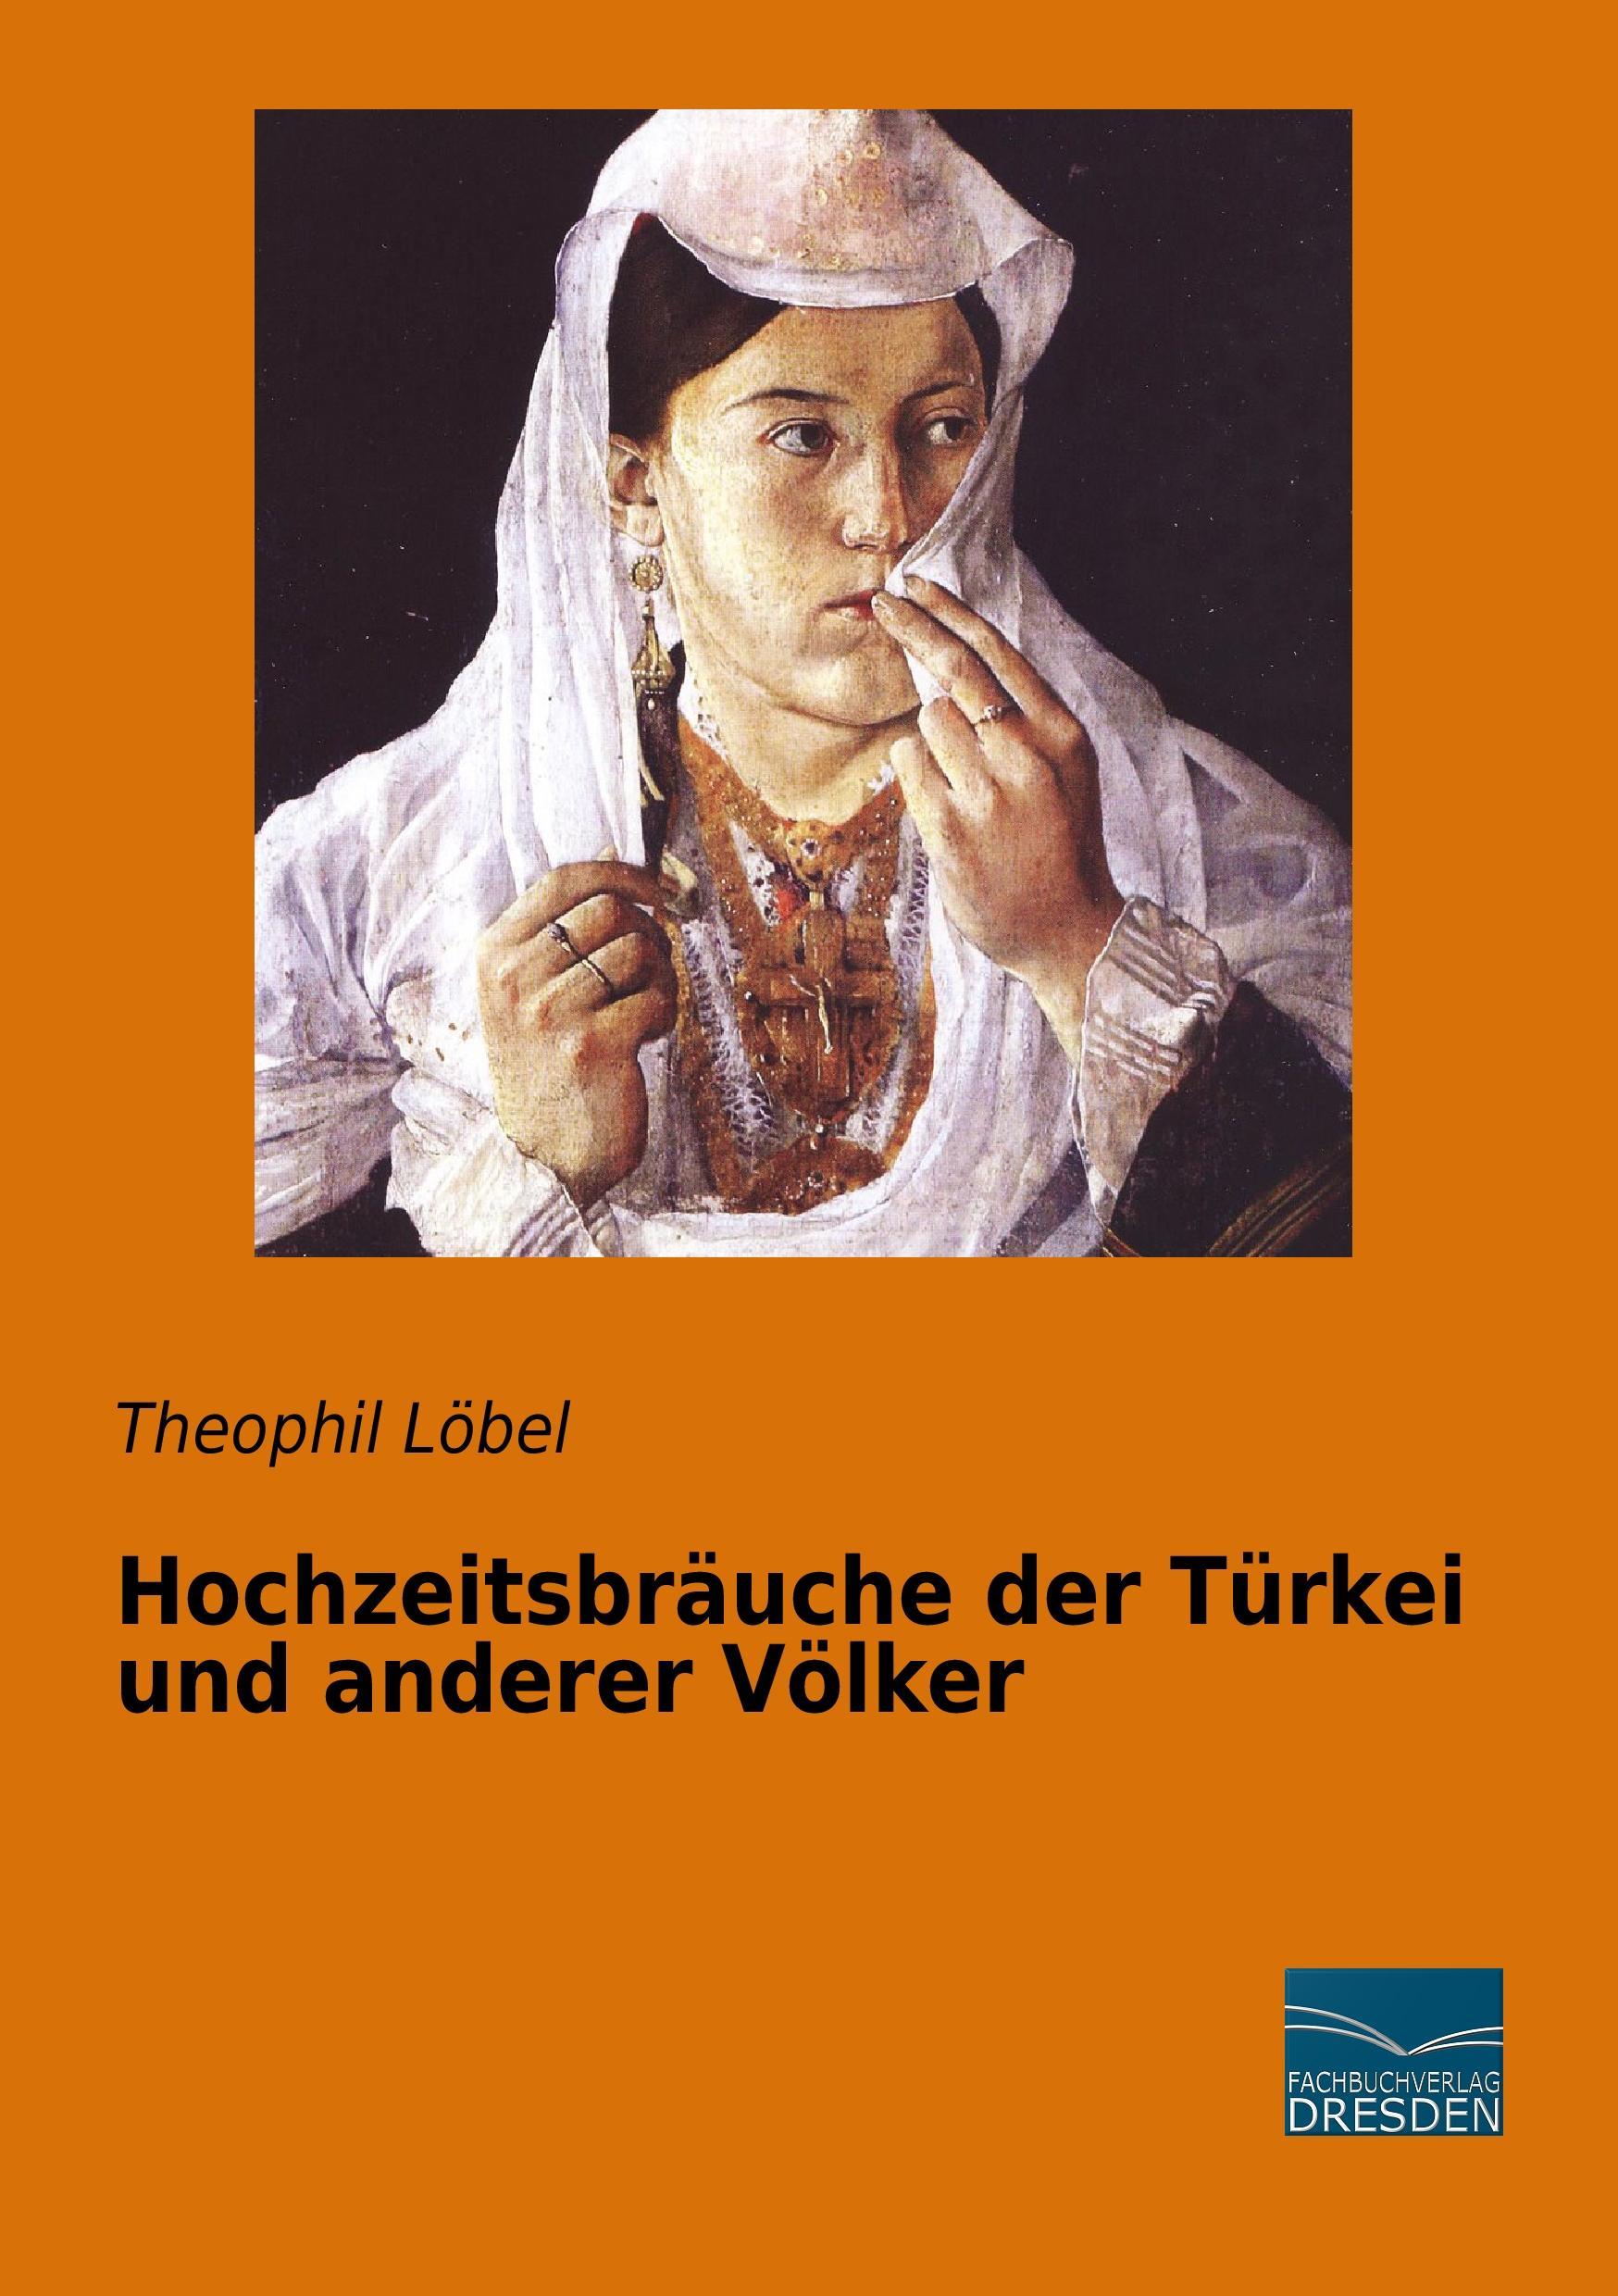 Hochzeitsbräuche der Türkei und anderer Völker Theophil Löbel - Bild 1 von 1